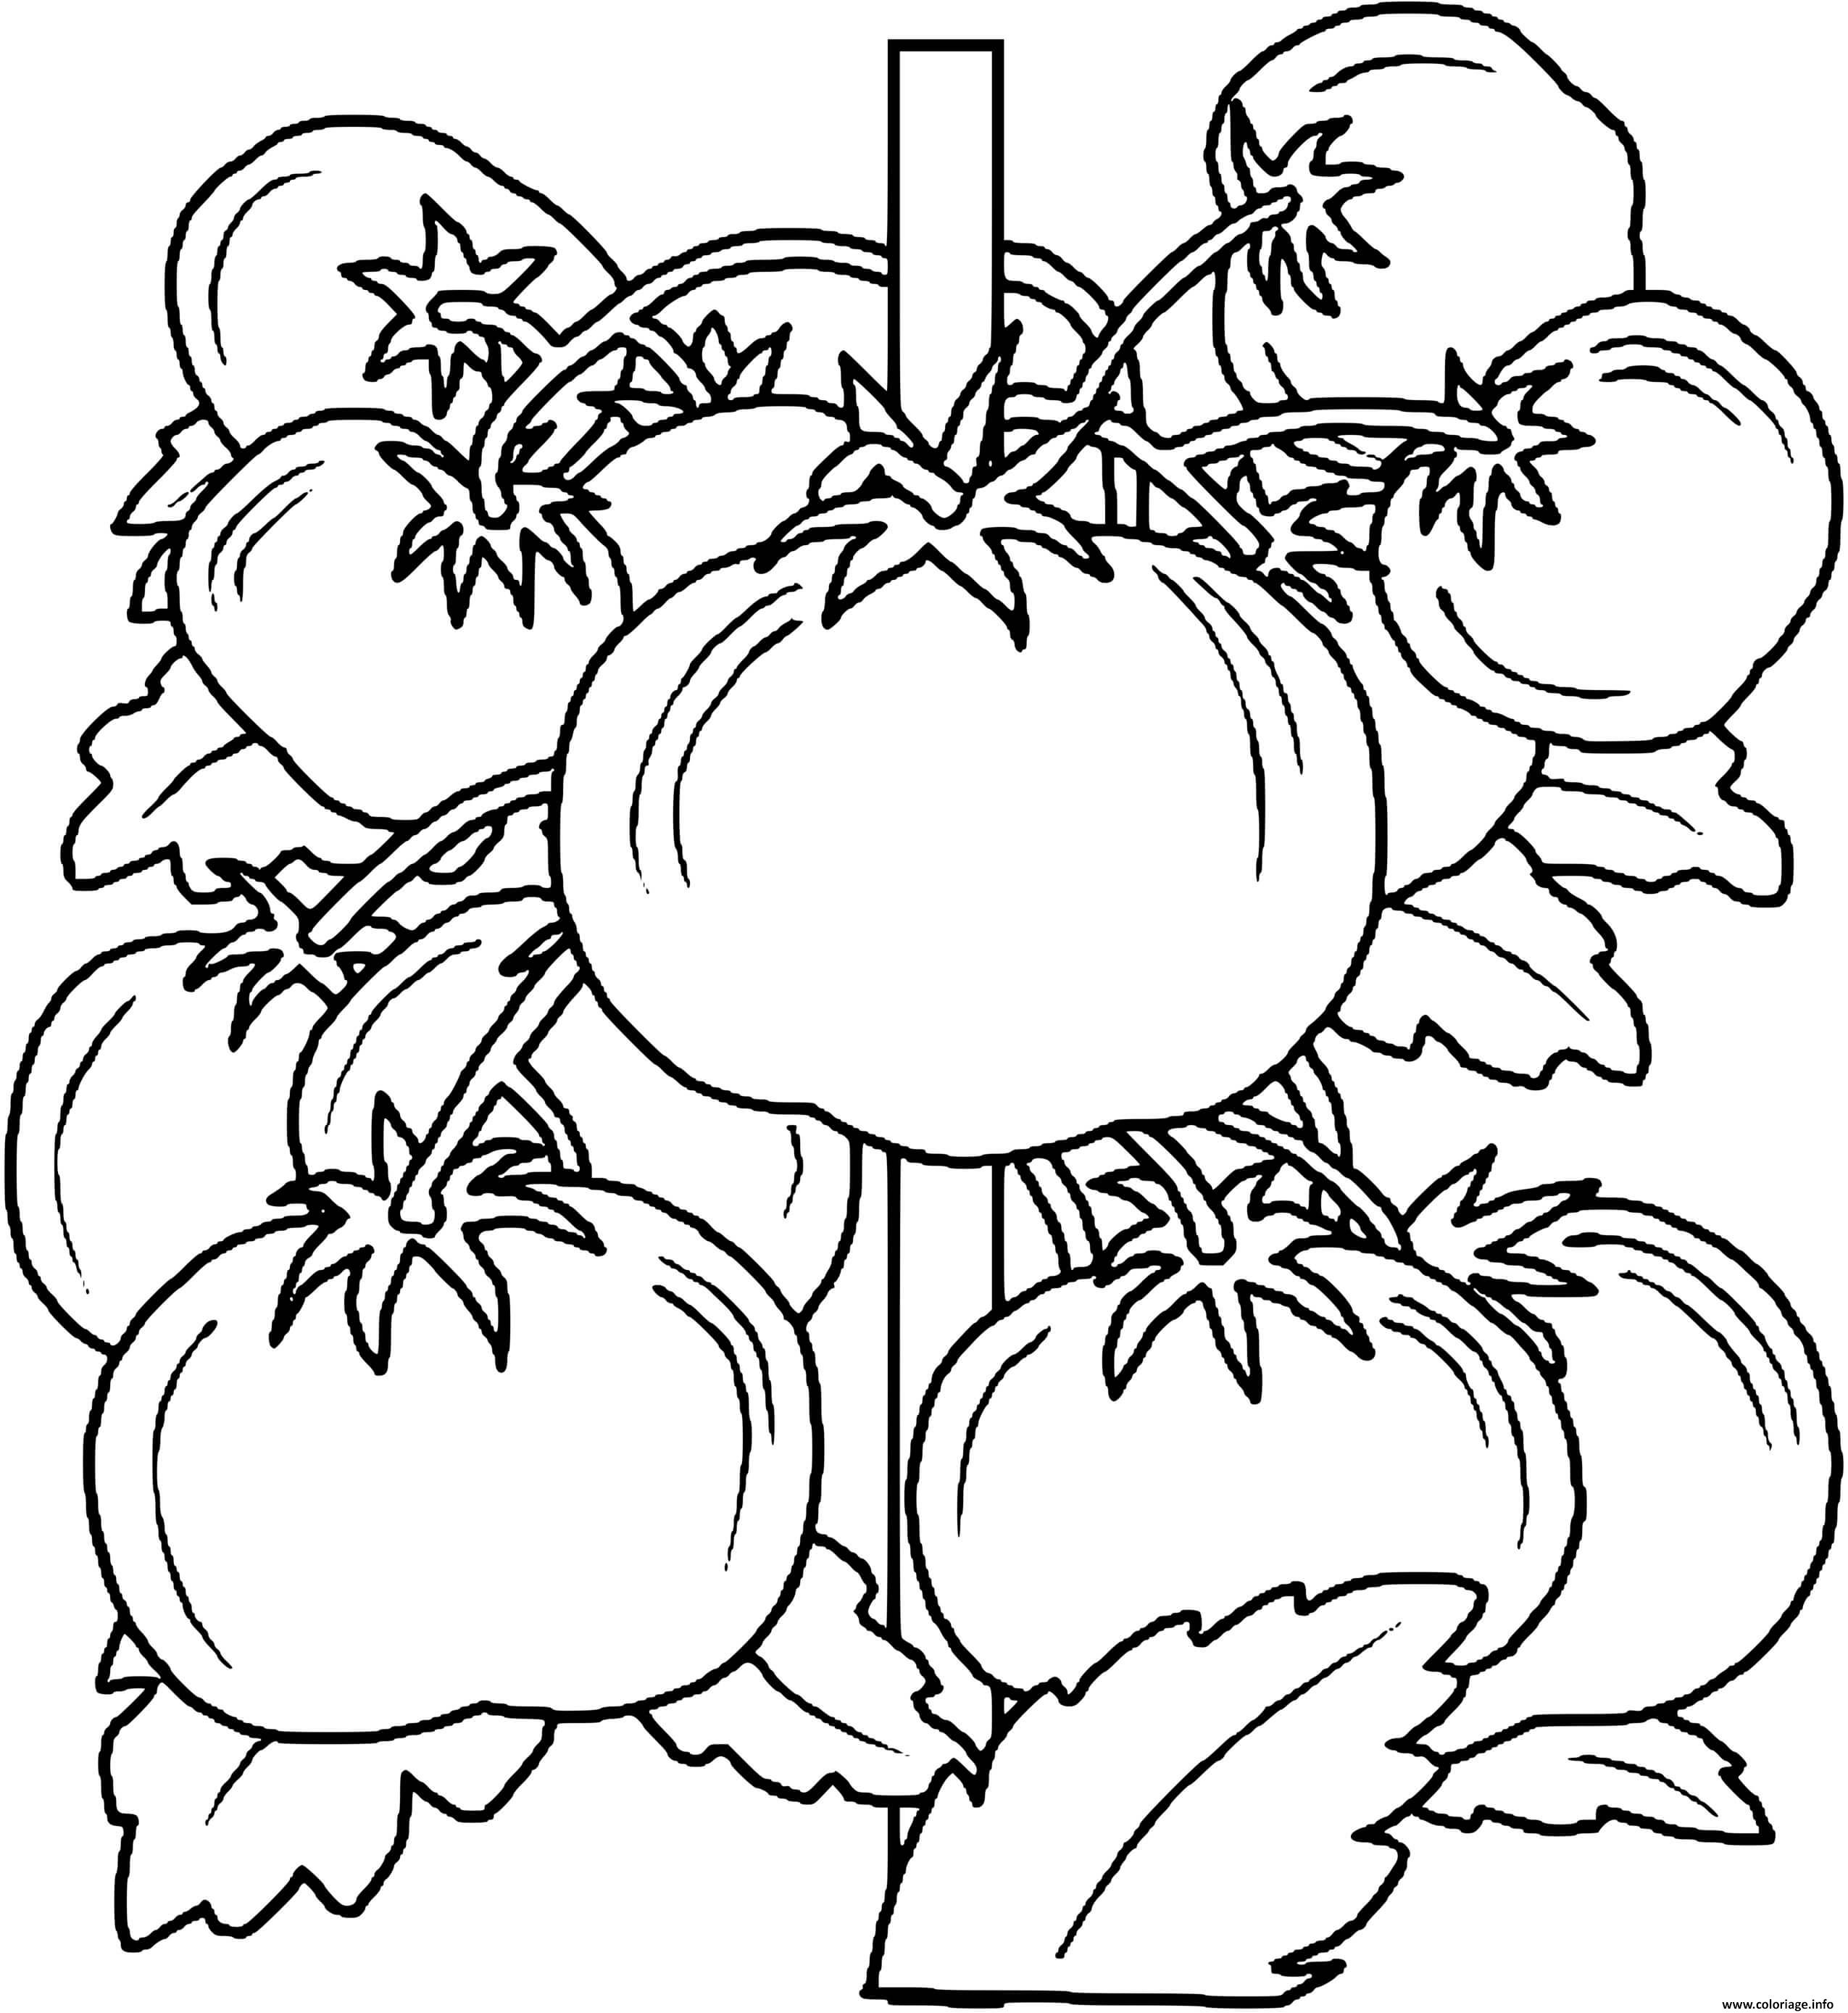 Dessin plan de tomates Coloriage Gratuit à Imprimer